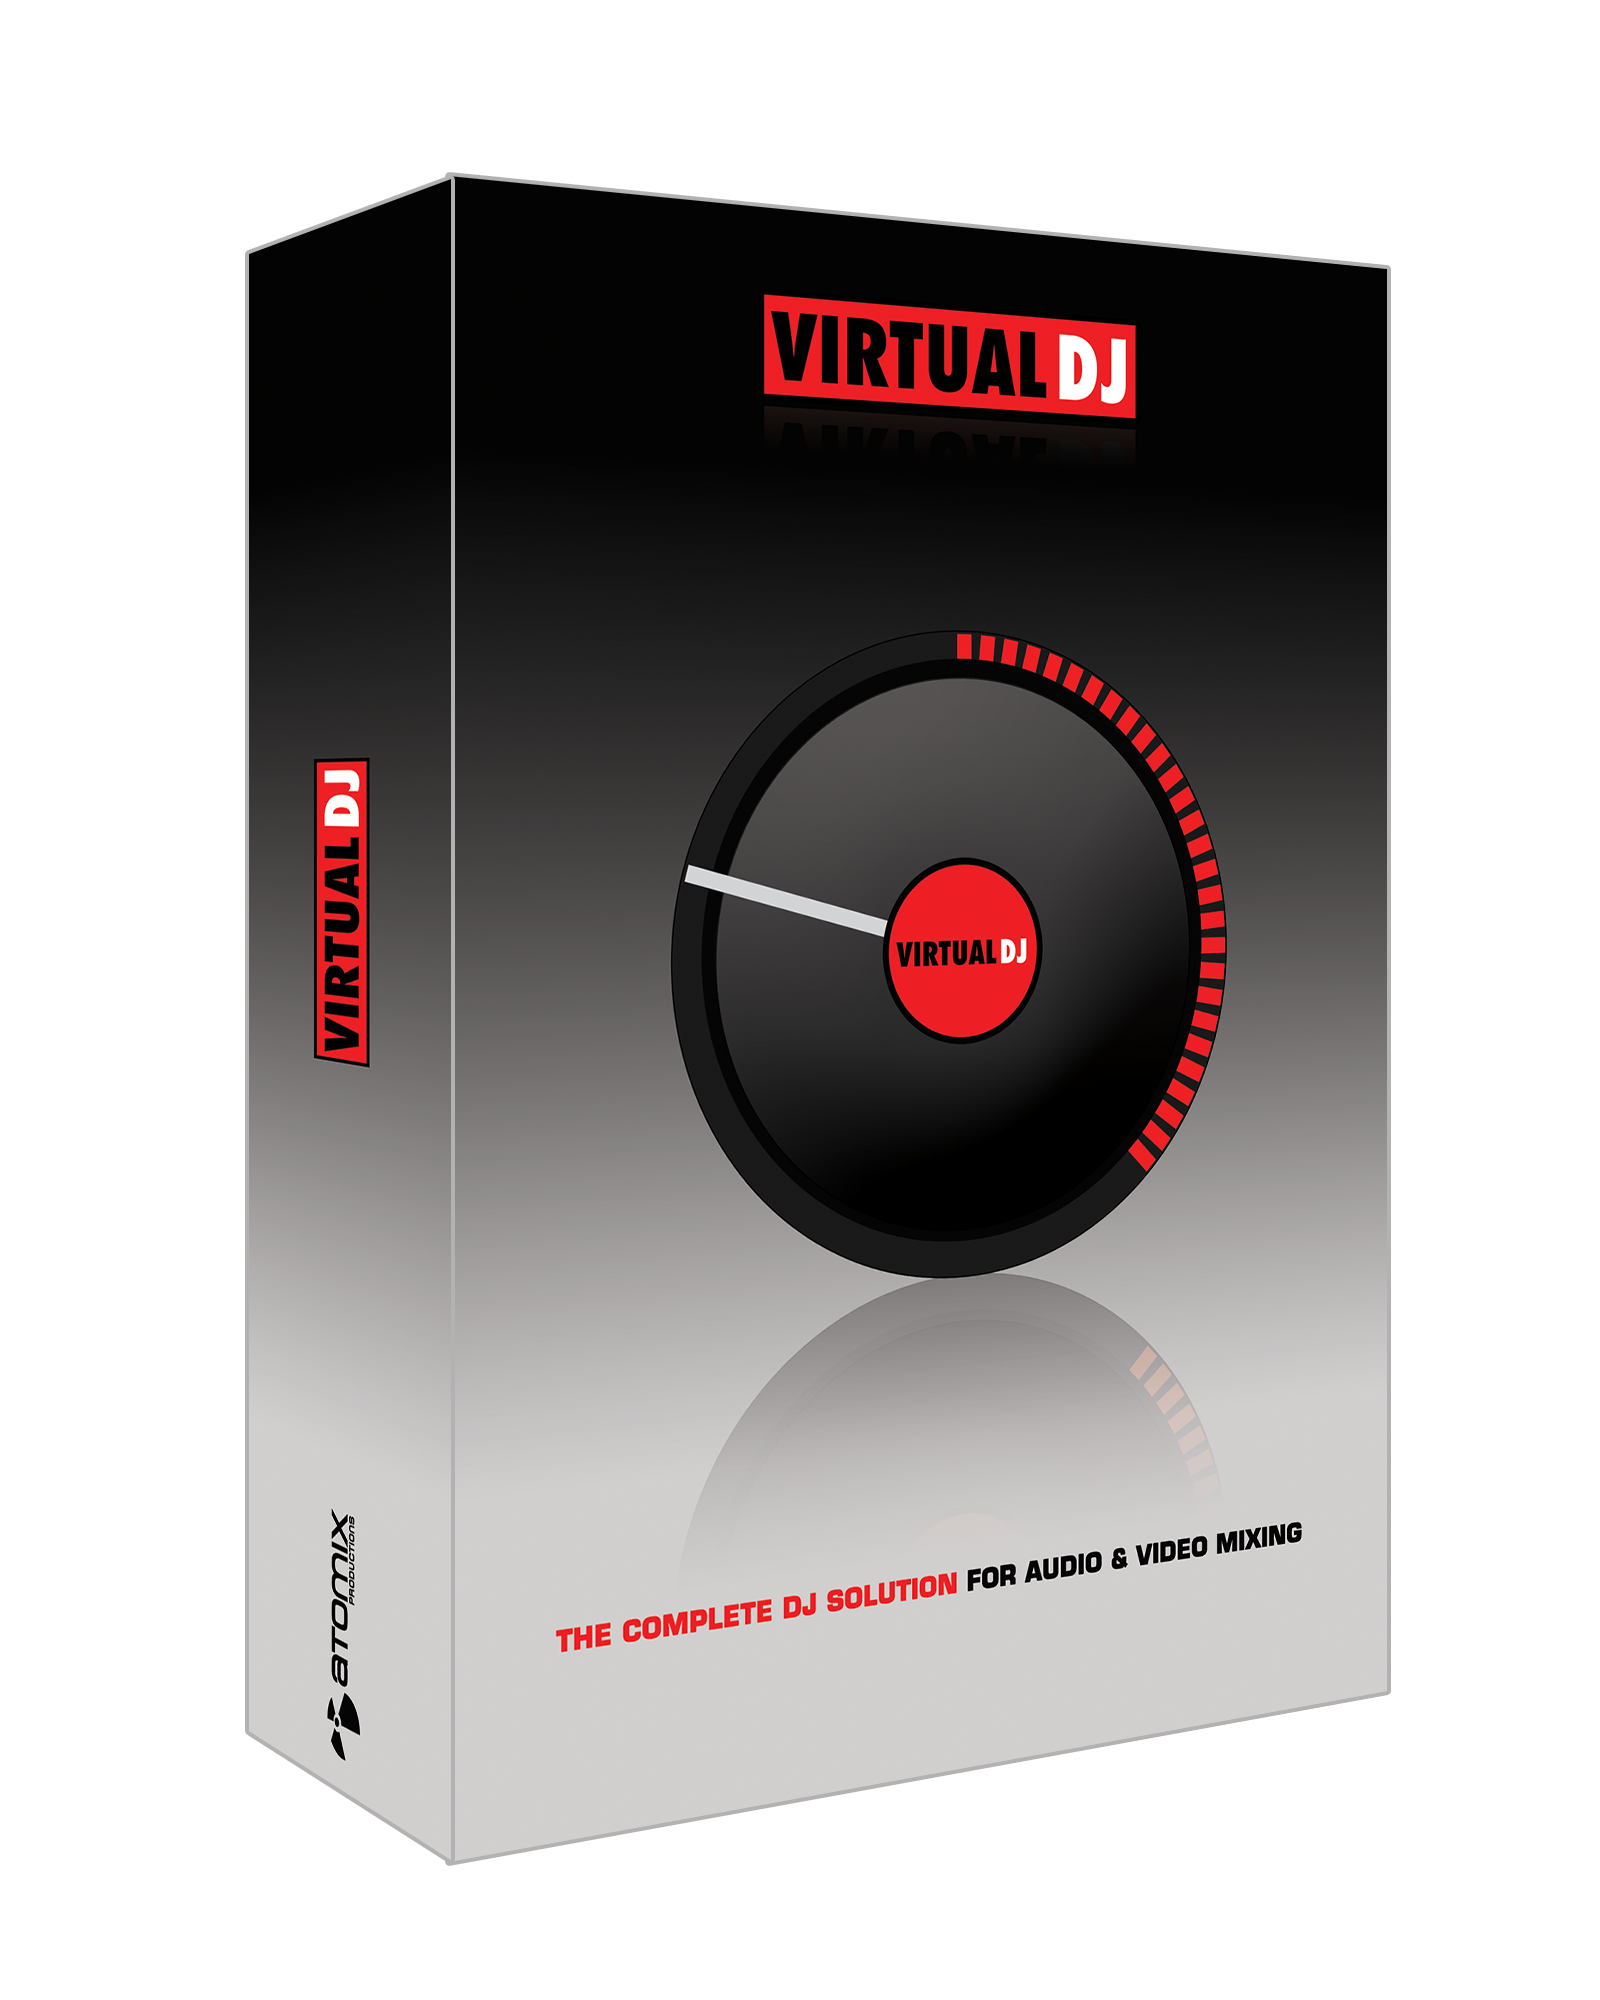 Download VirtualDJ - Press